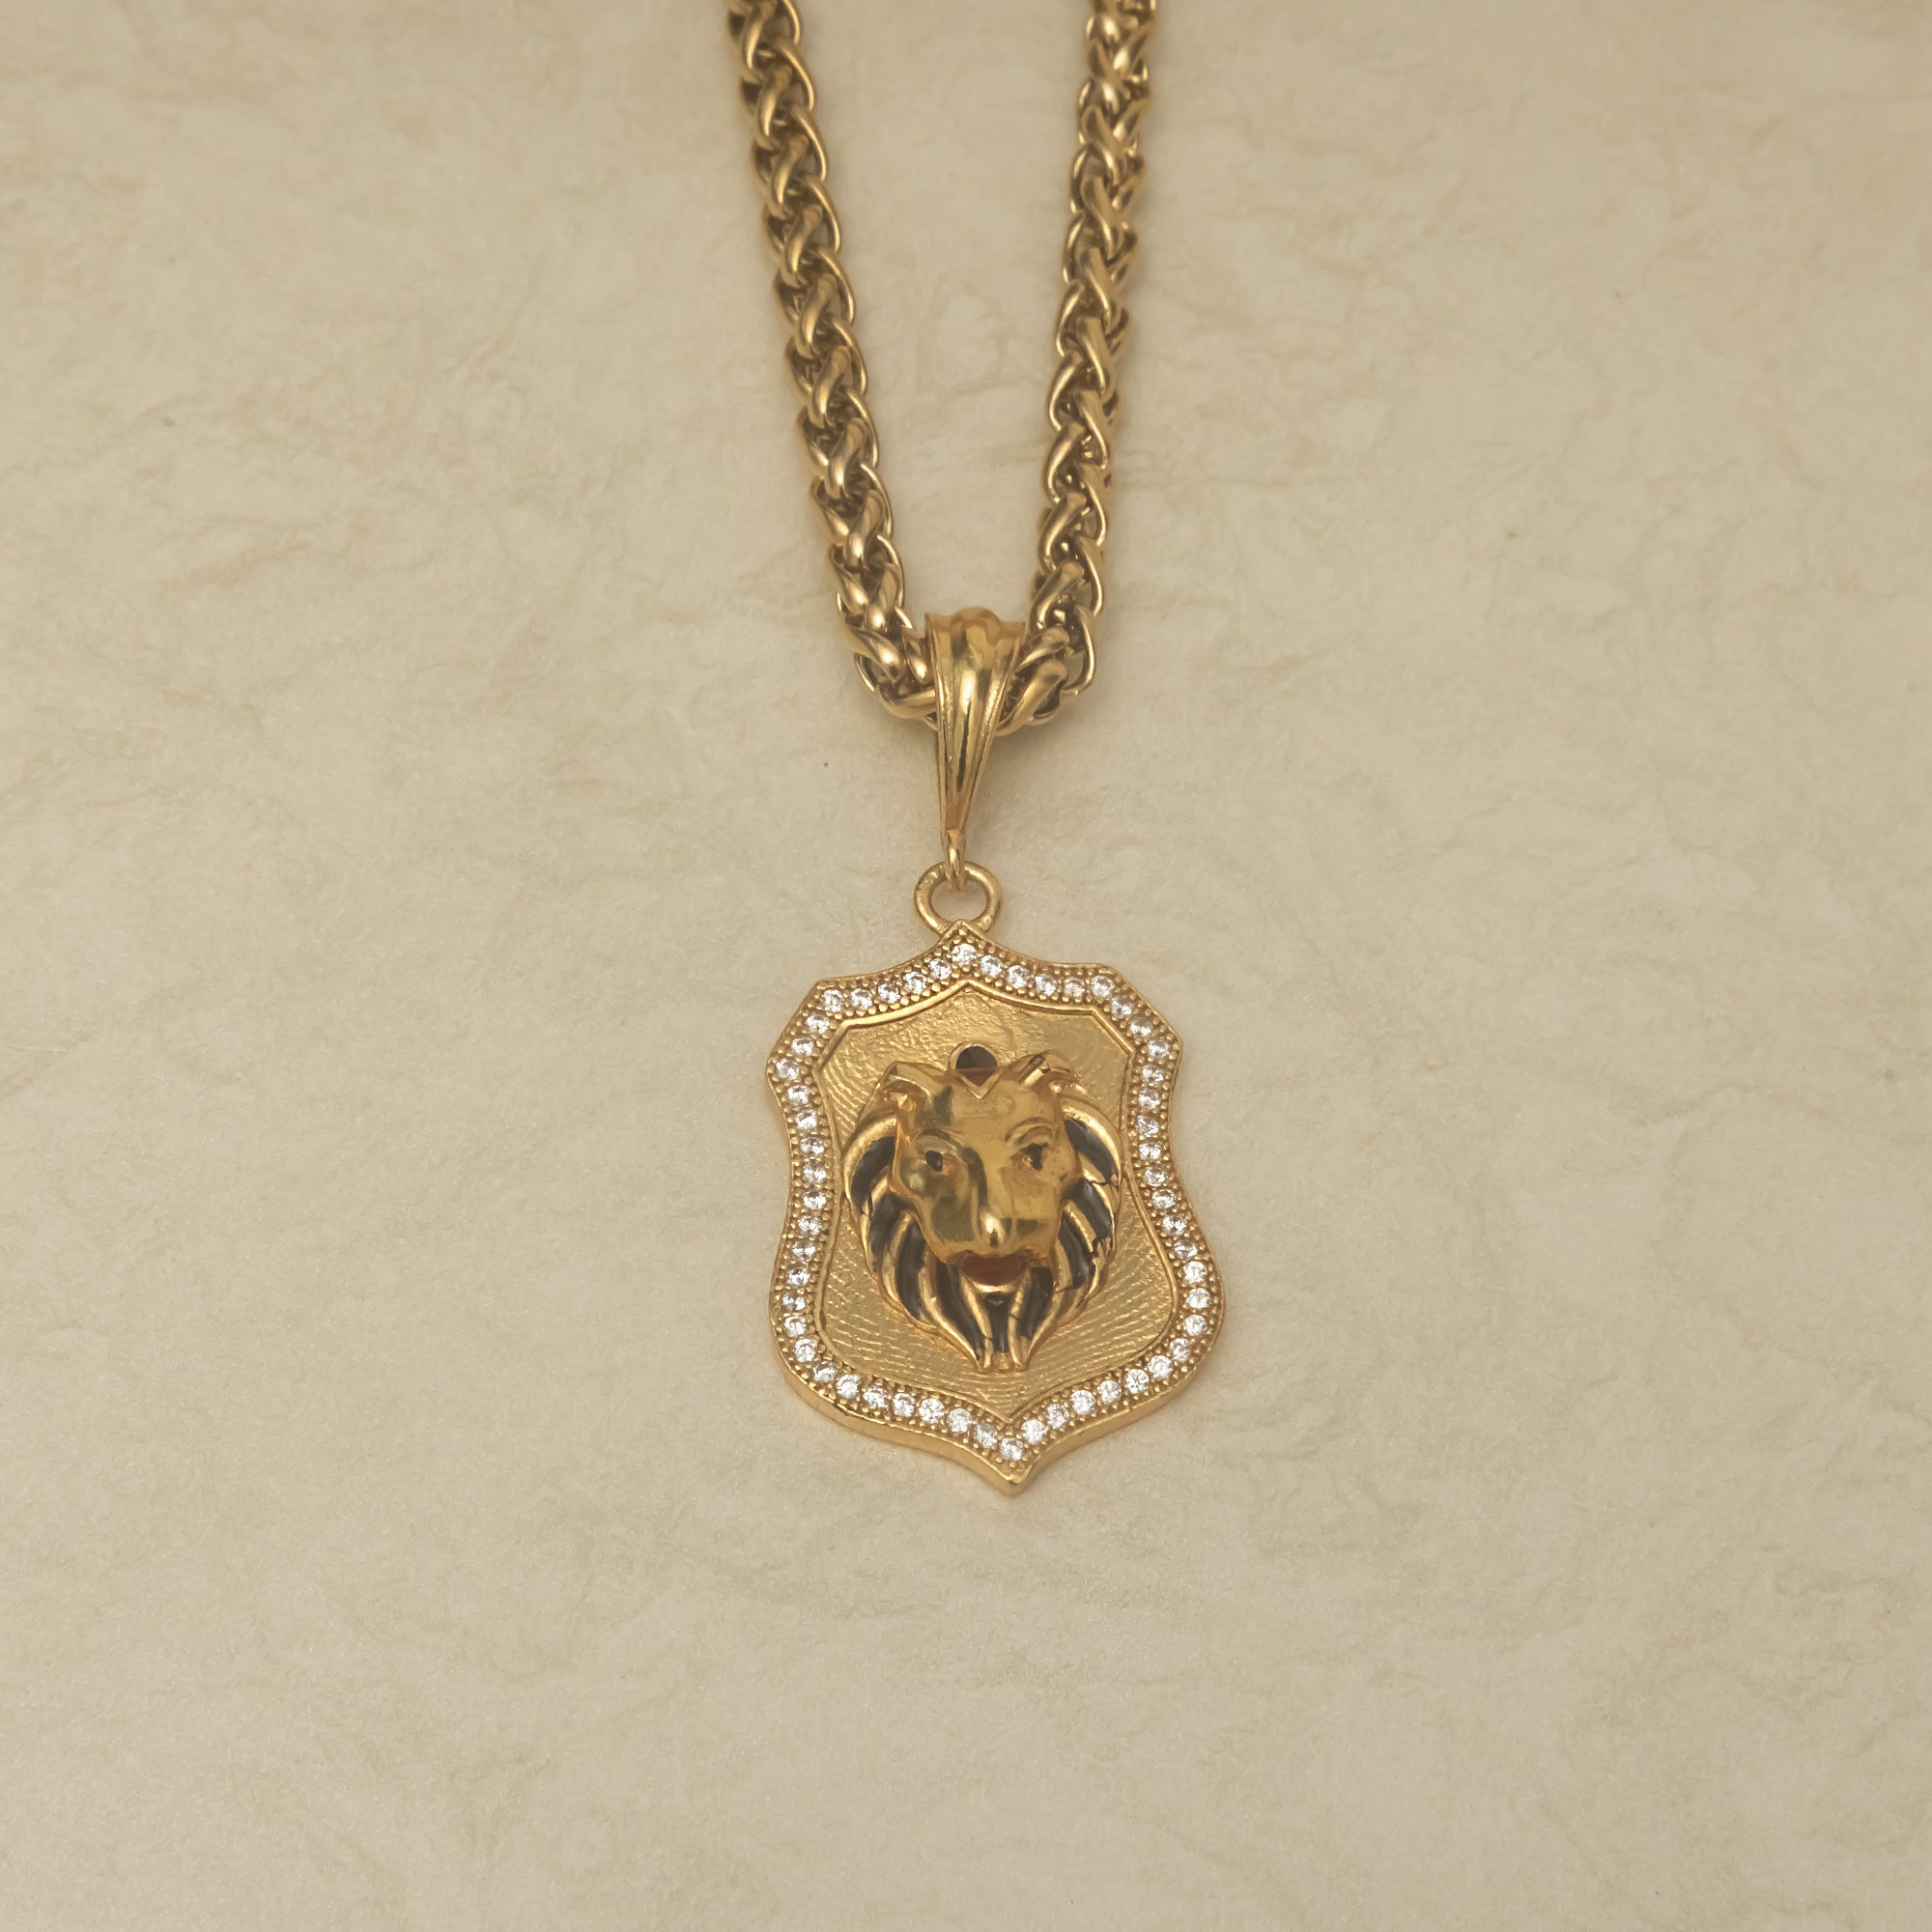 Portrait Of Lion Pendalt With Golden Chain